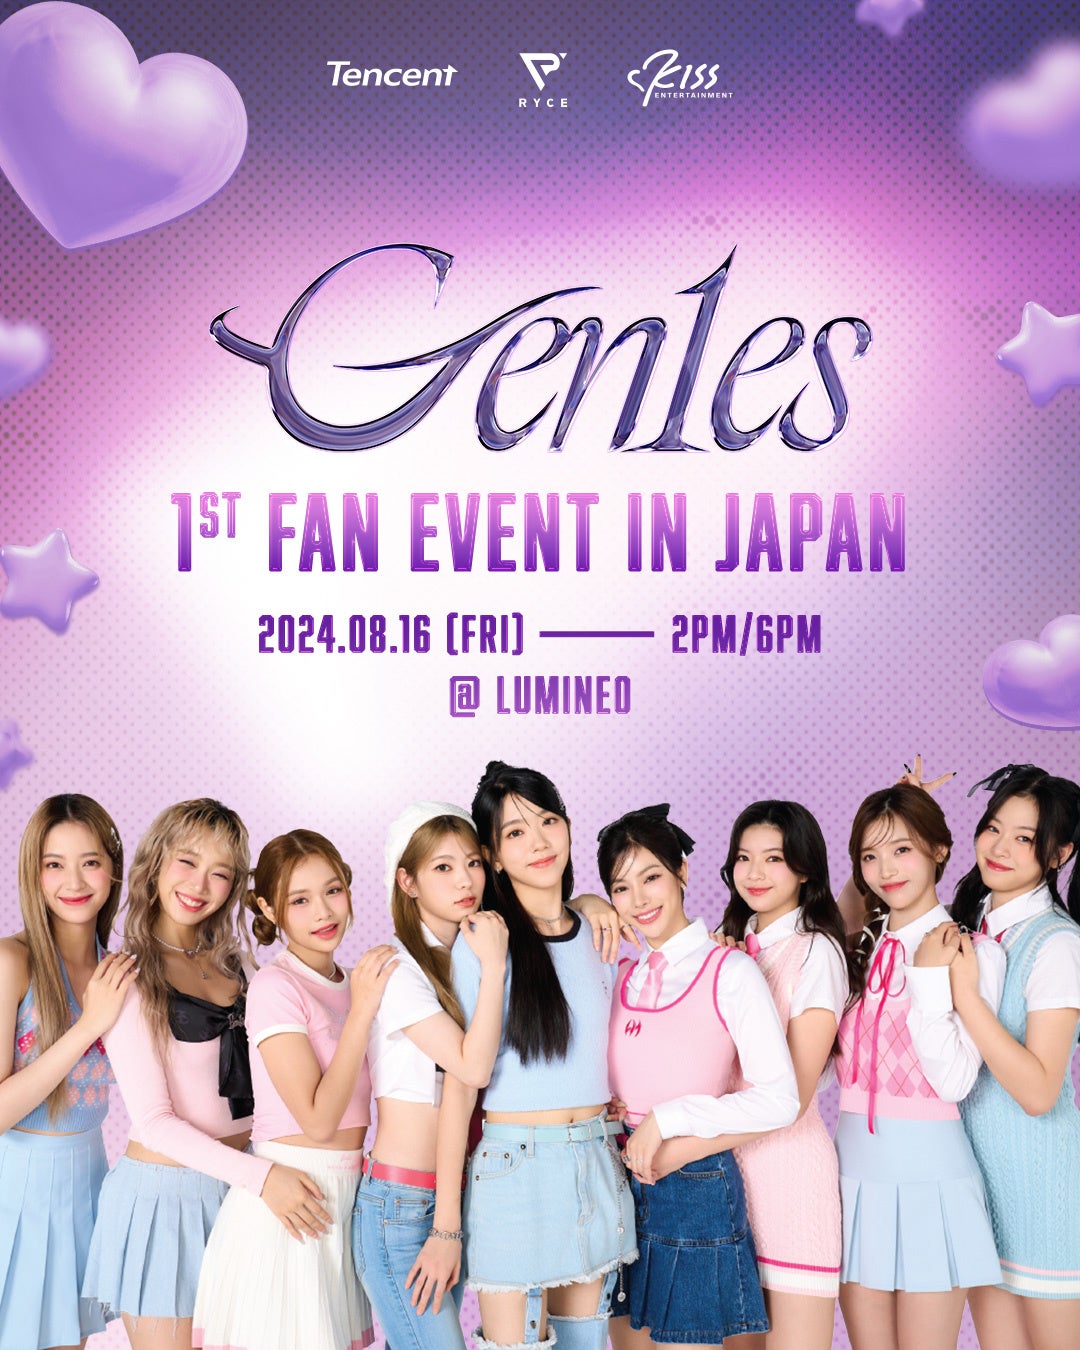 Z世代のアイコン9人組グローバルアイドルグループ”Gen1es”（ジーニズ）ついに初来日！